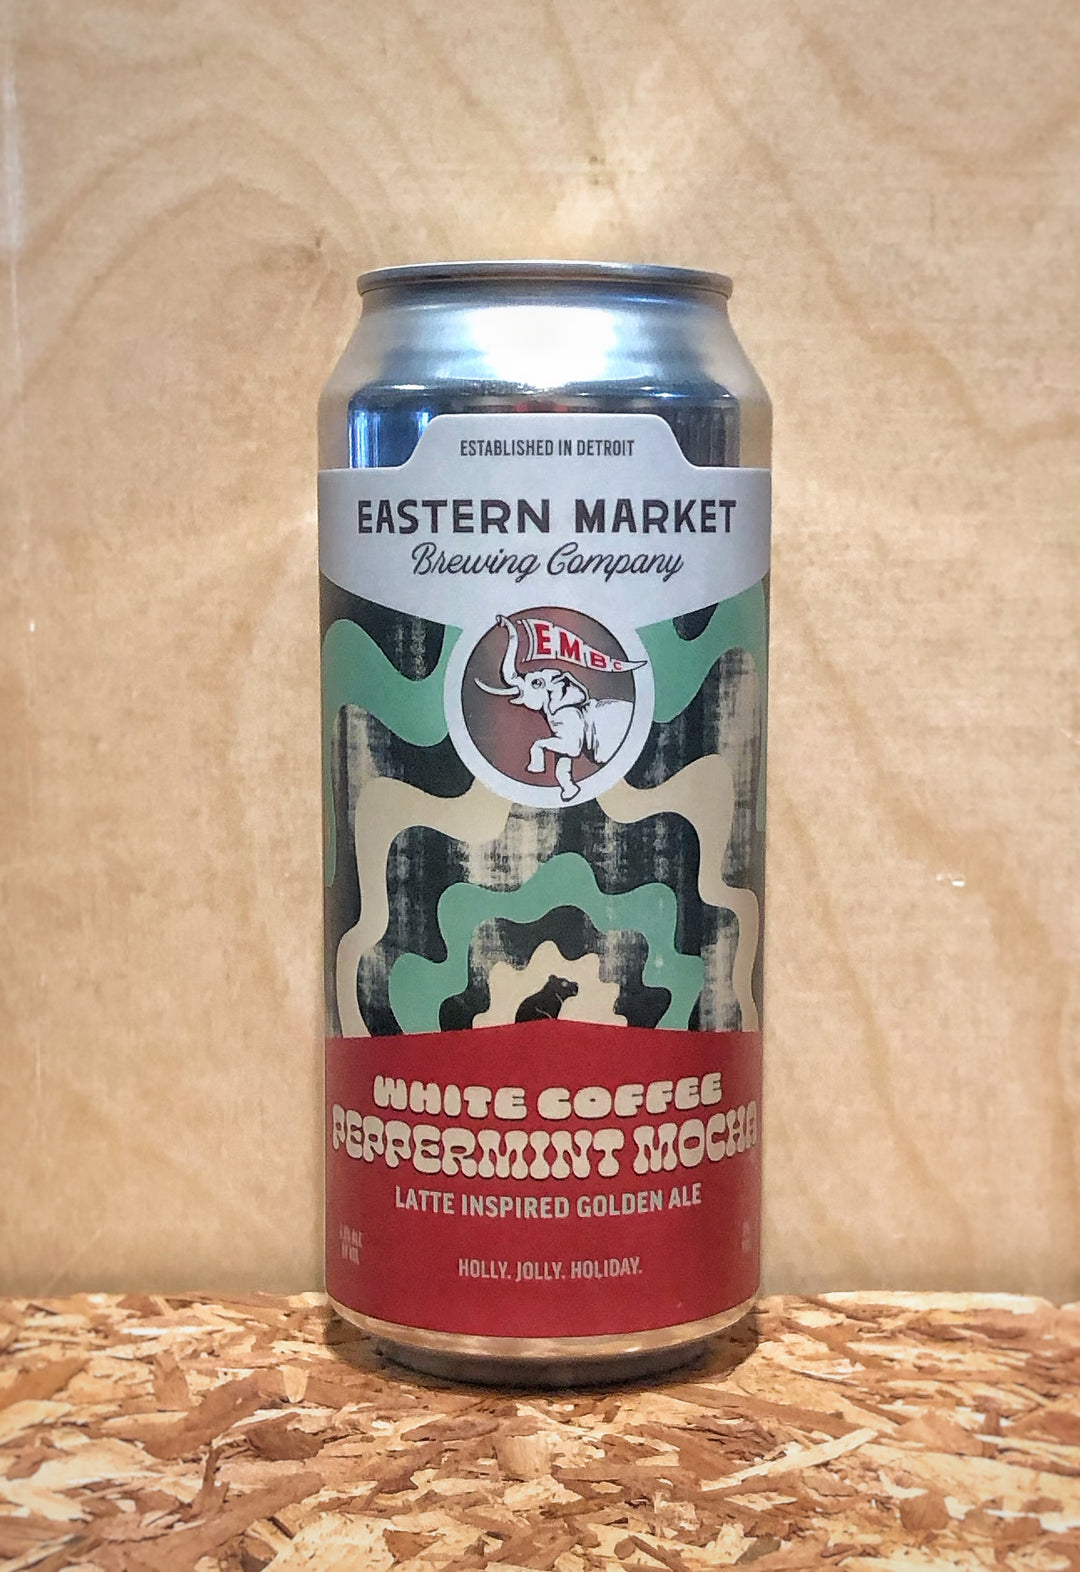 Eastern Market Brewing Co. 'White Coffee Peppermint Mocha' Latte Inspired Golden Ale (Detroit, MI)